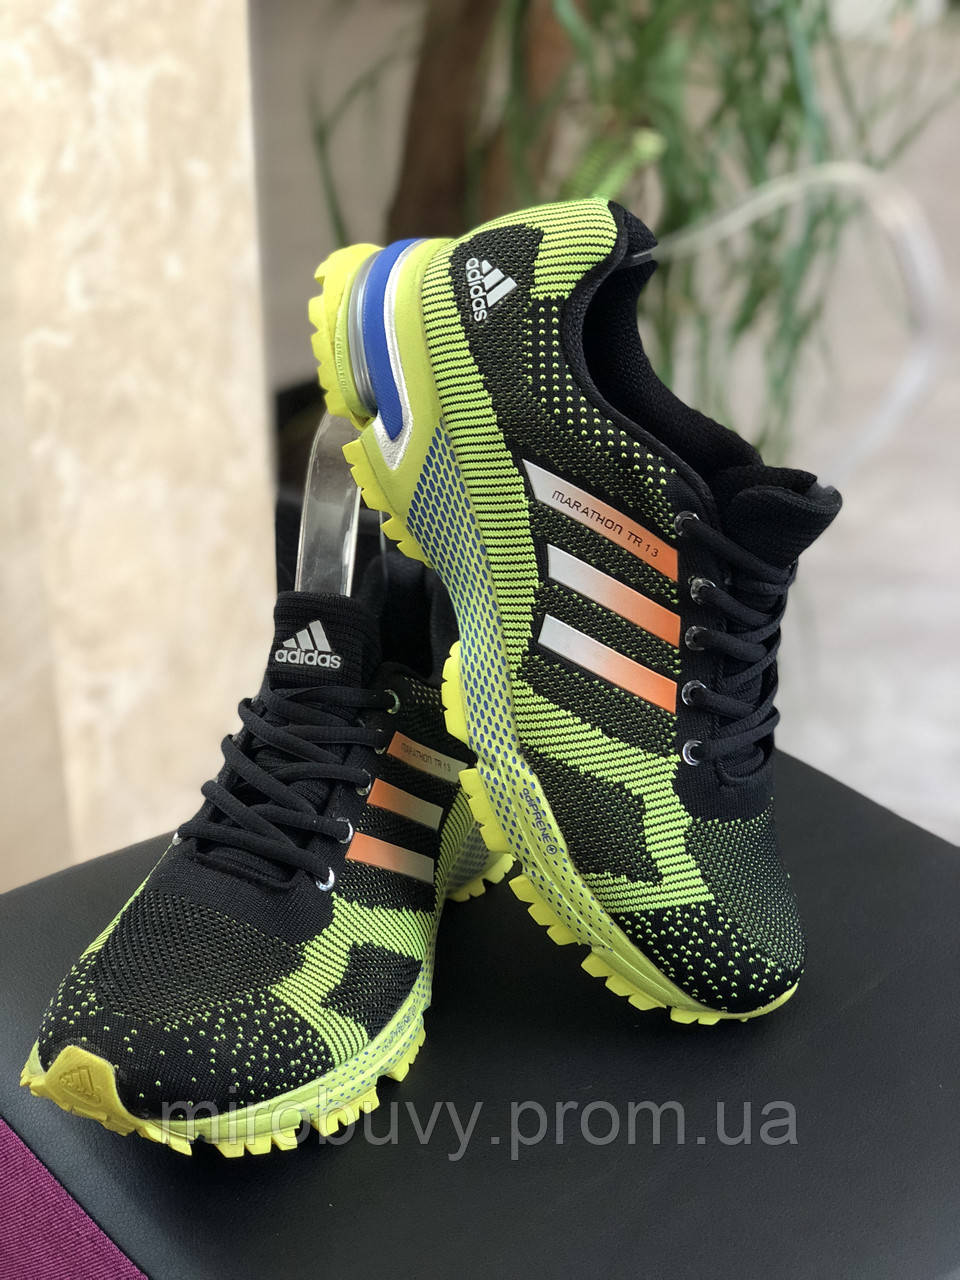 Кроссовки Adidas Marathon TR 13, цена 900 грн., купить в Хмельницком —  Prom.ua (ID#1028277797)